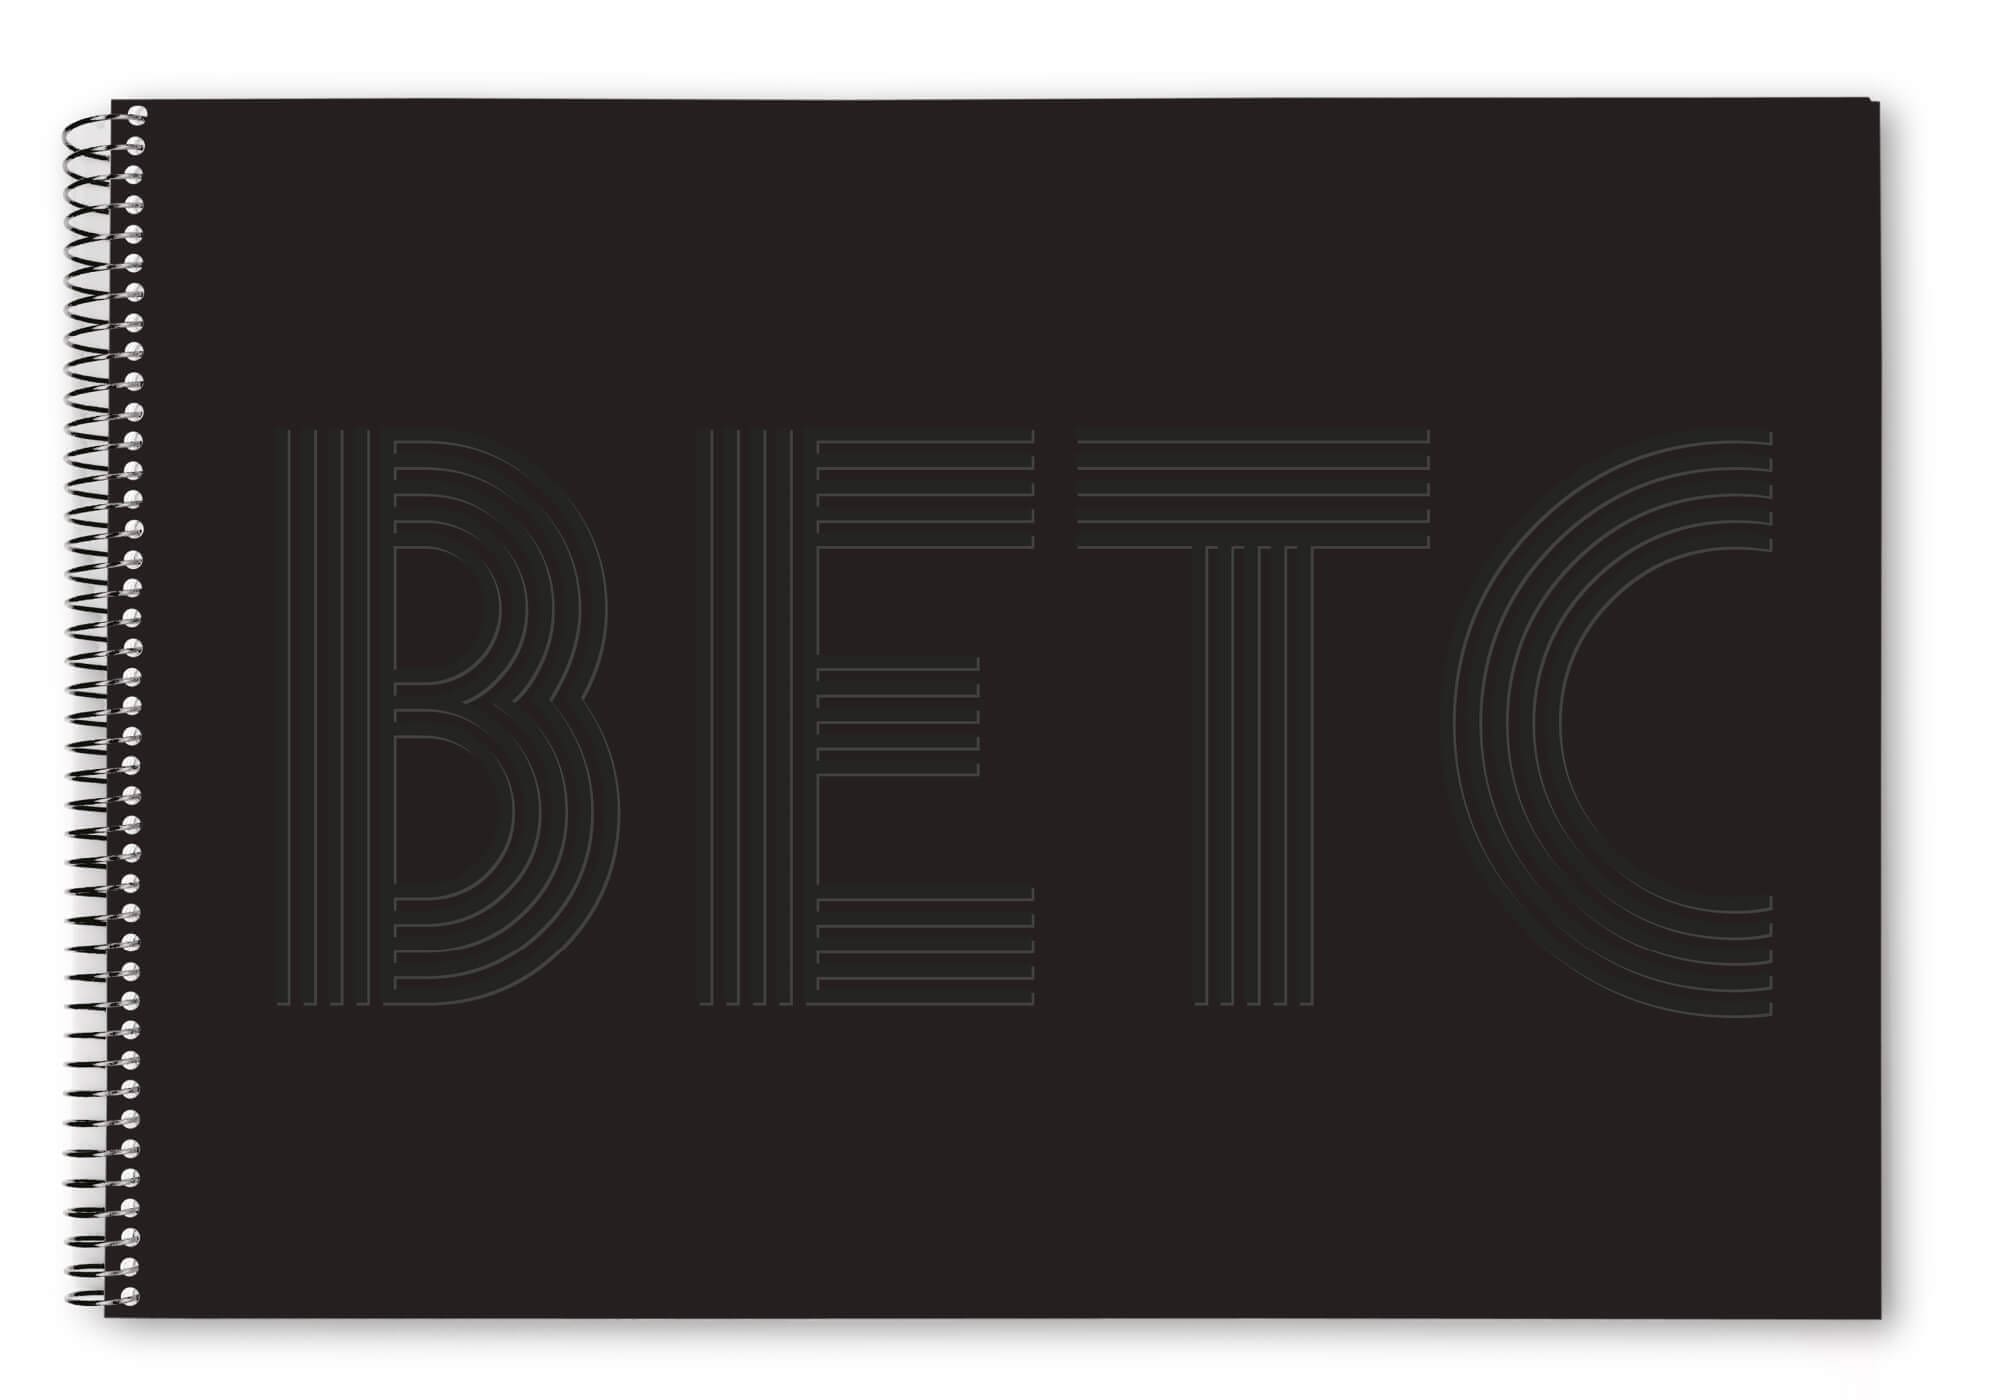 Carnet de l'agence de publicité BETC, version noir et version blanche avec gaufrage, design Ichetkar